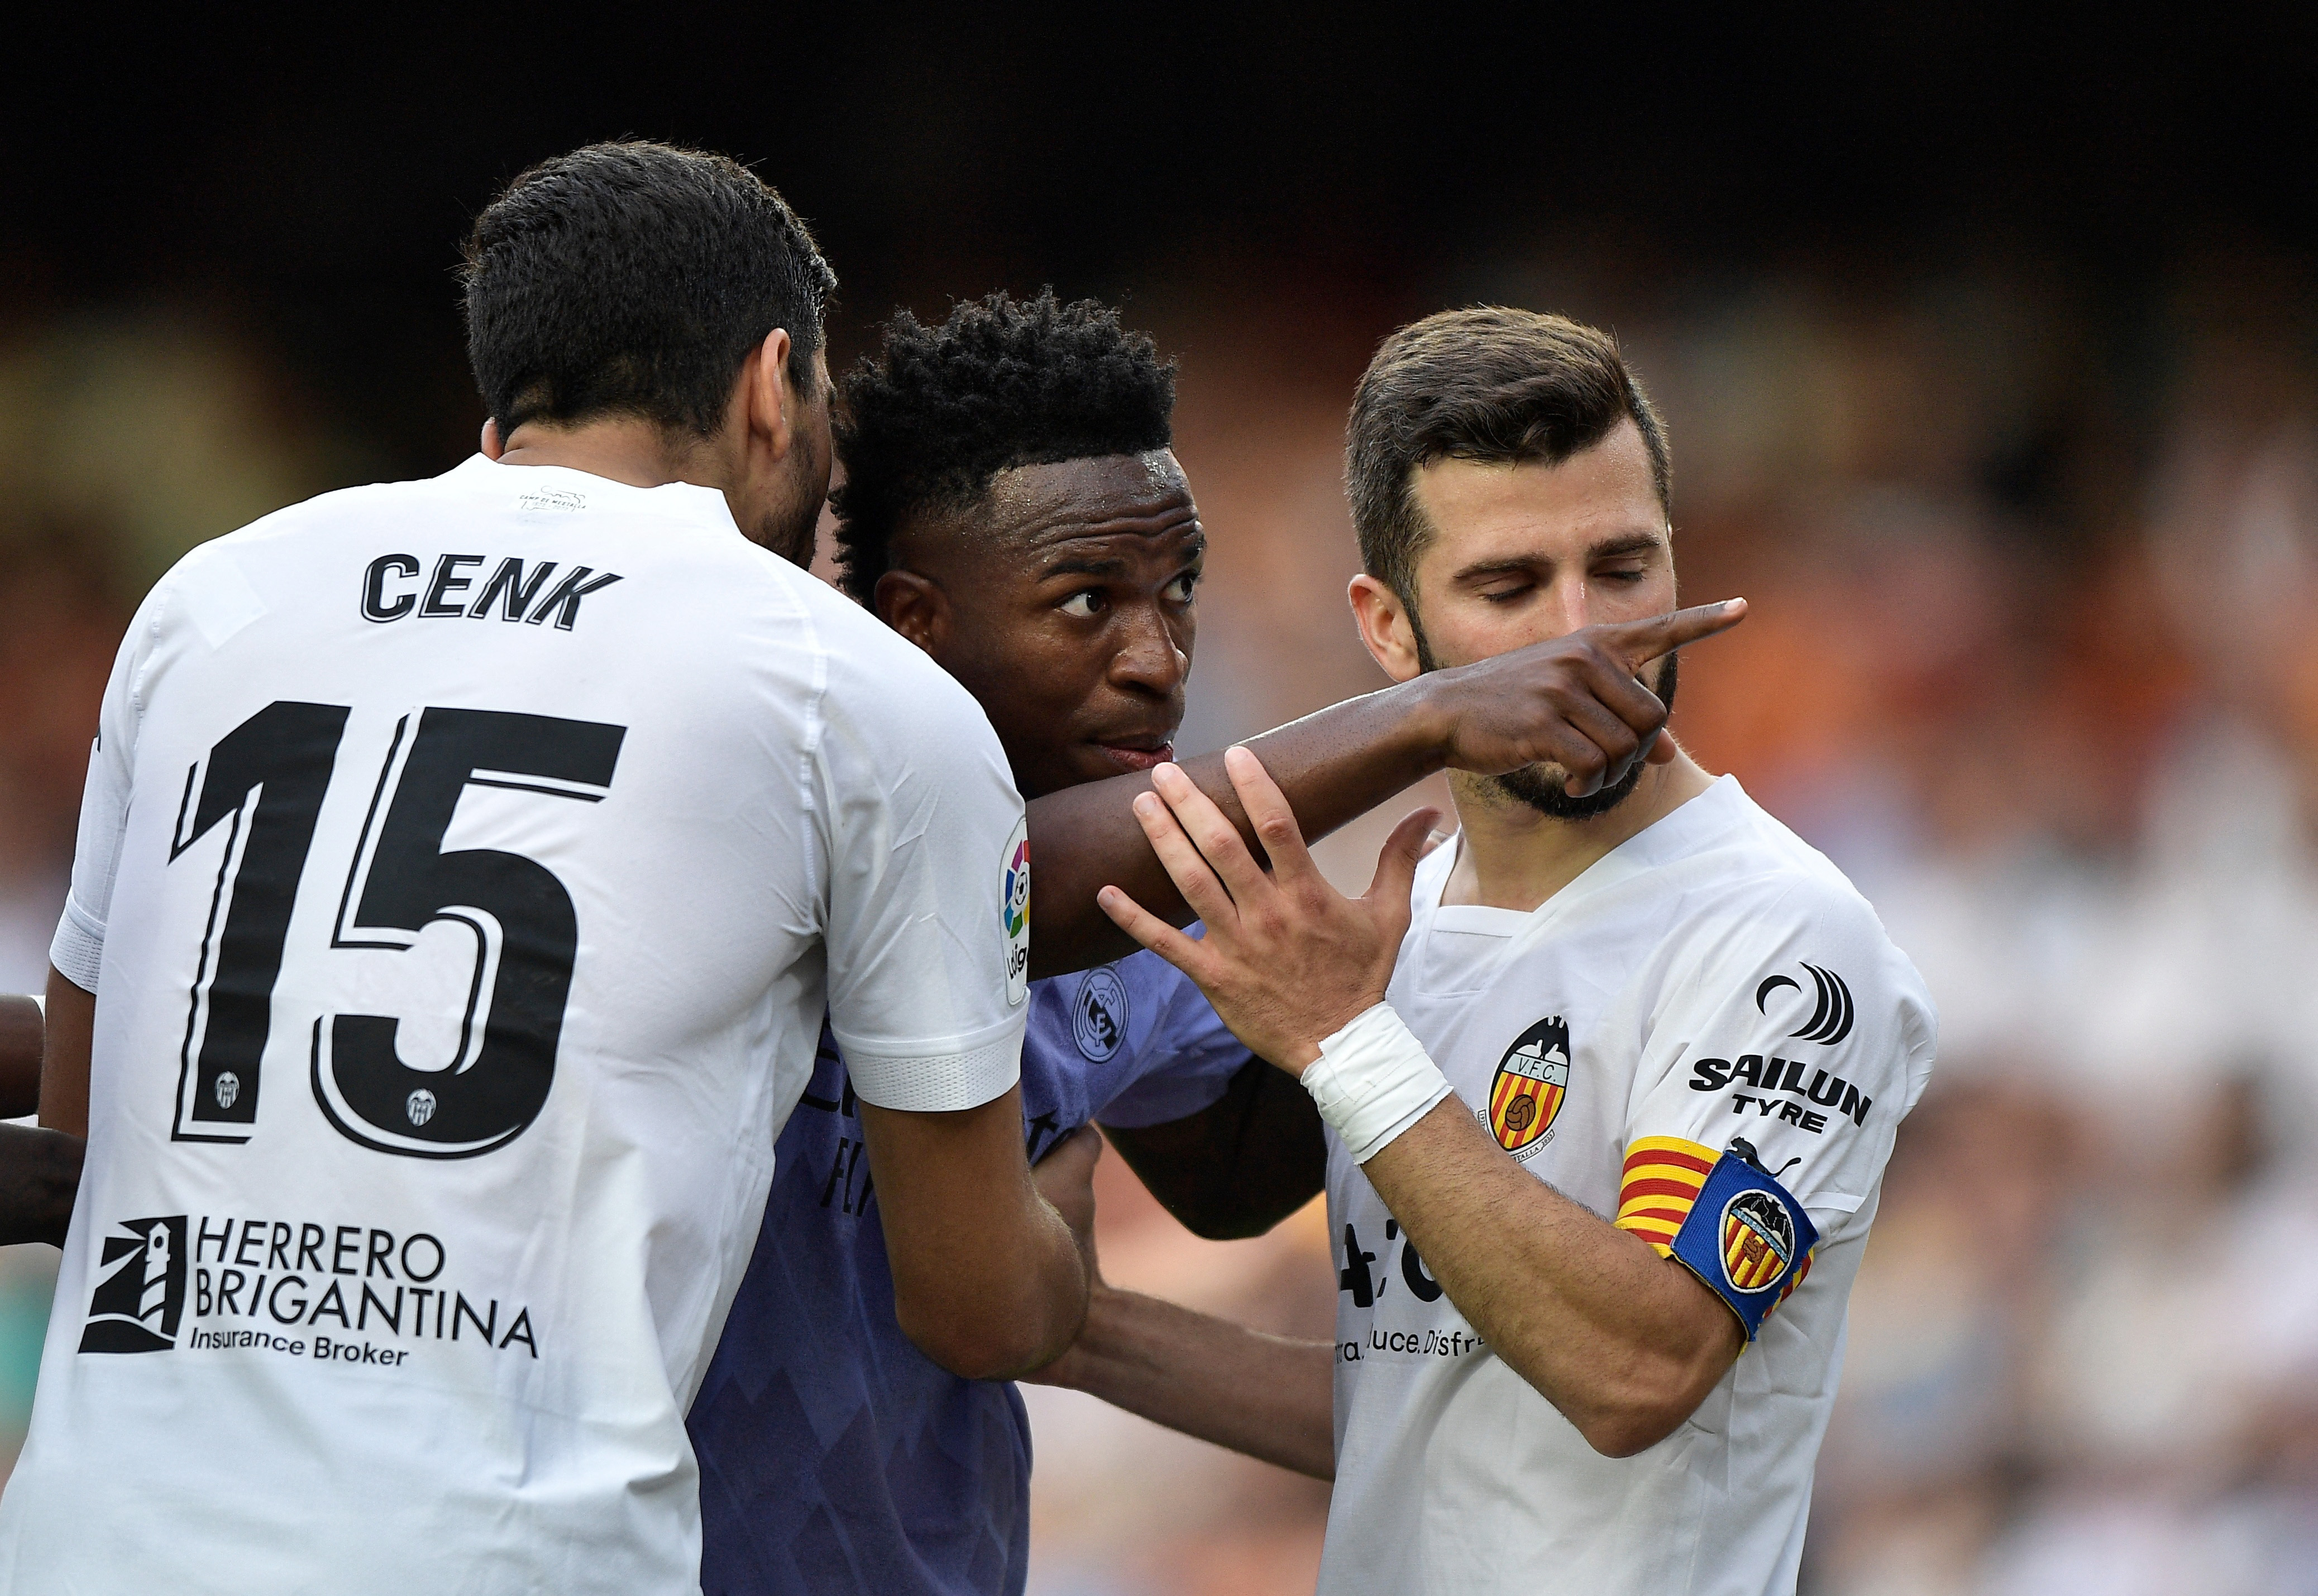 El club Valencia identificó a los aficionados que profirieron insultos racistas a Vinicius Junior y los expulsará de por vida (REUTERS/Pablo Morano)